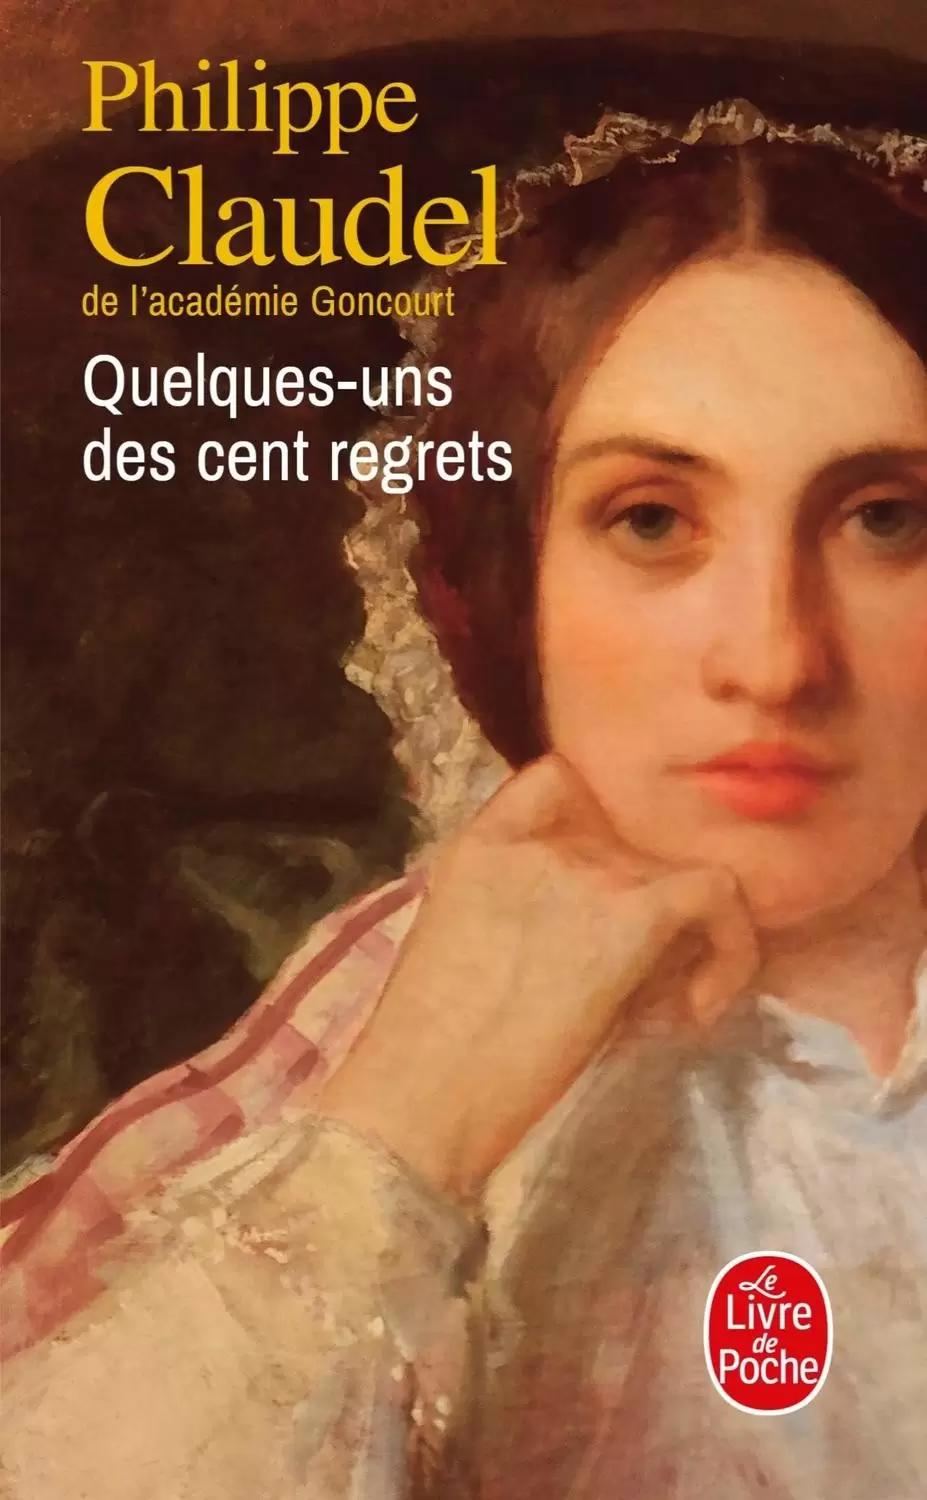 Philippe Claudel - Quelques-uns des cent regrets